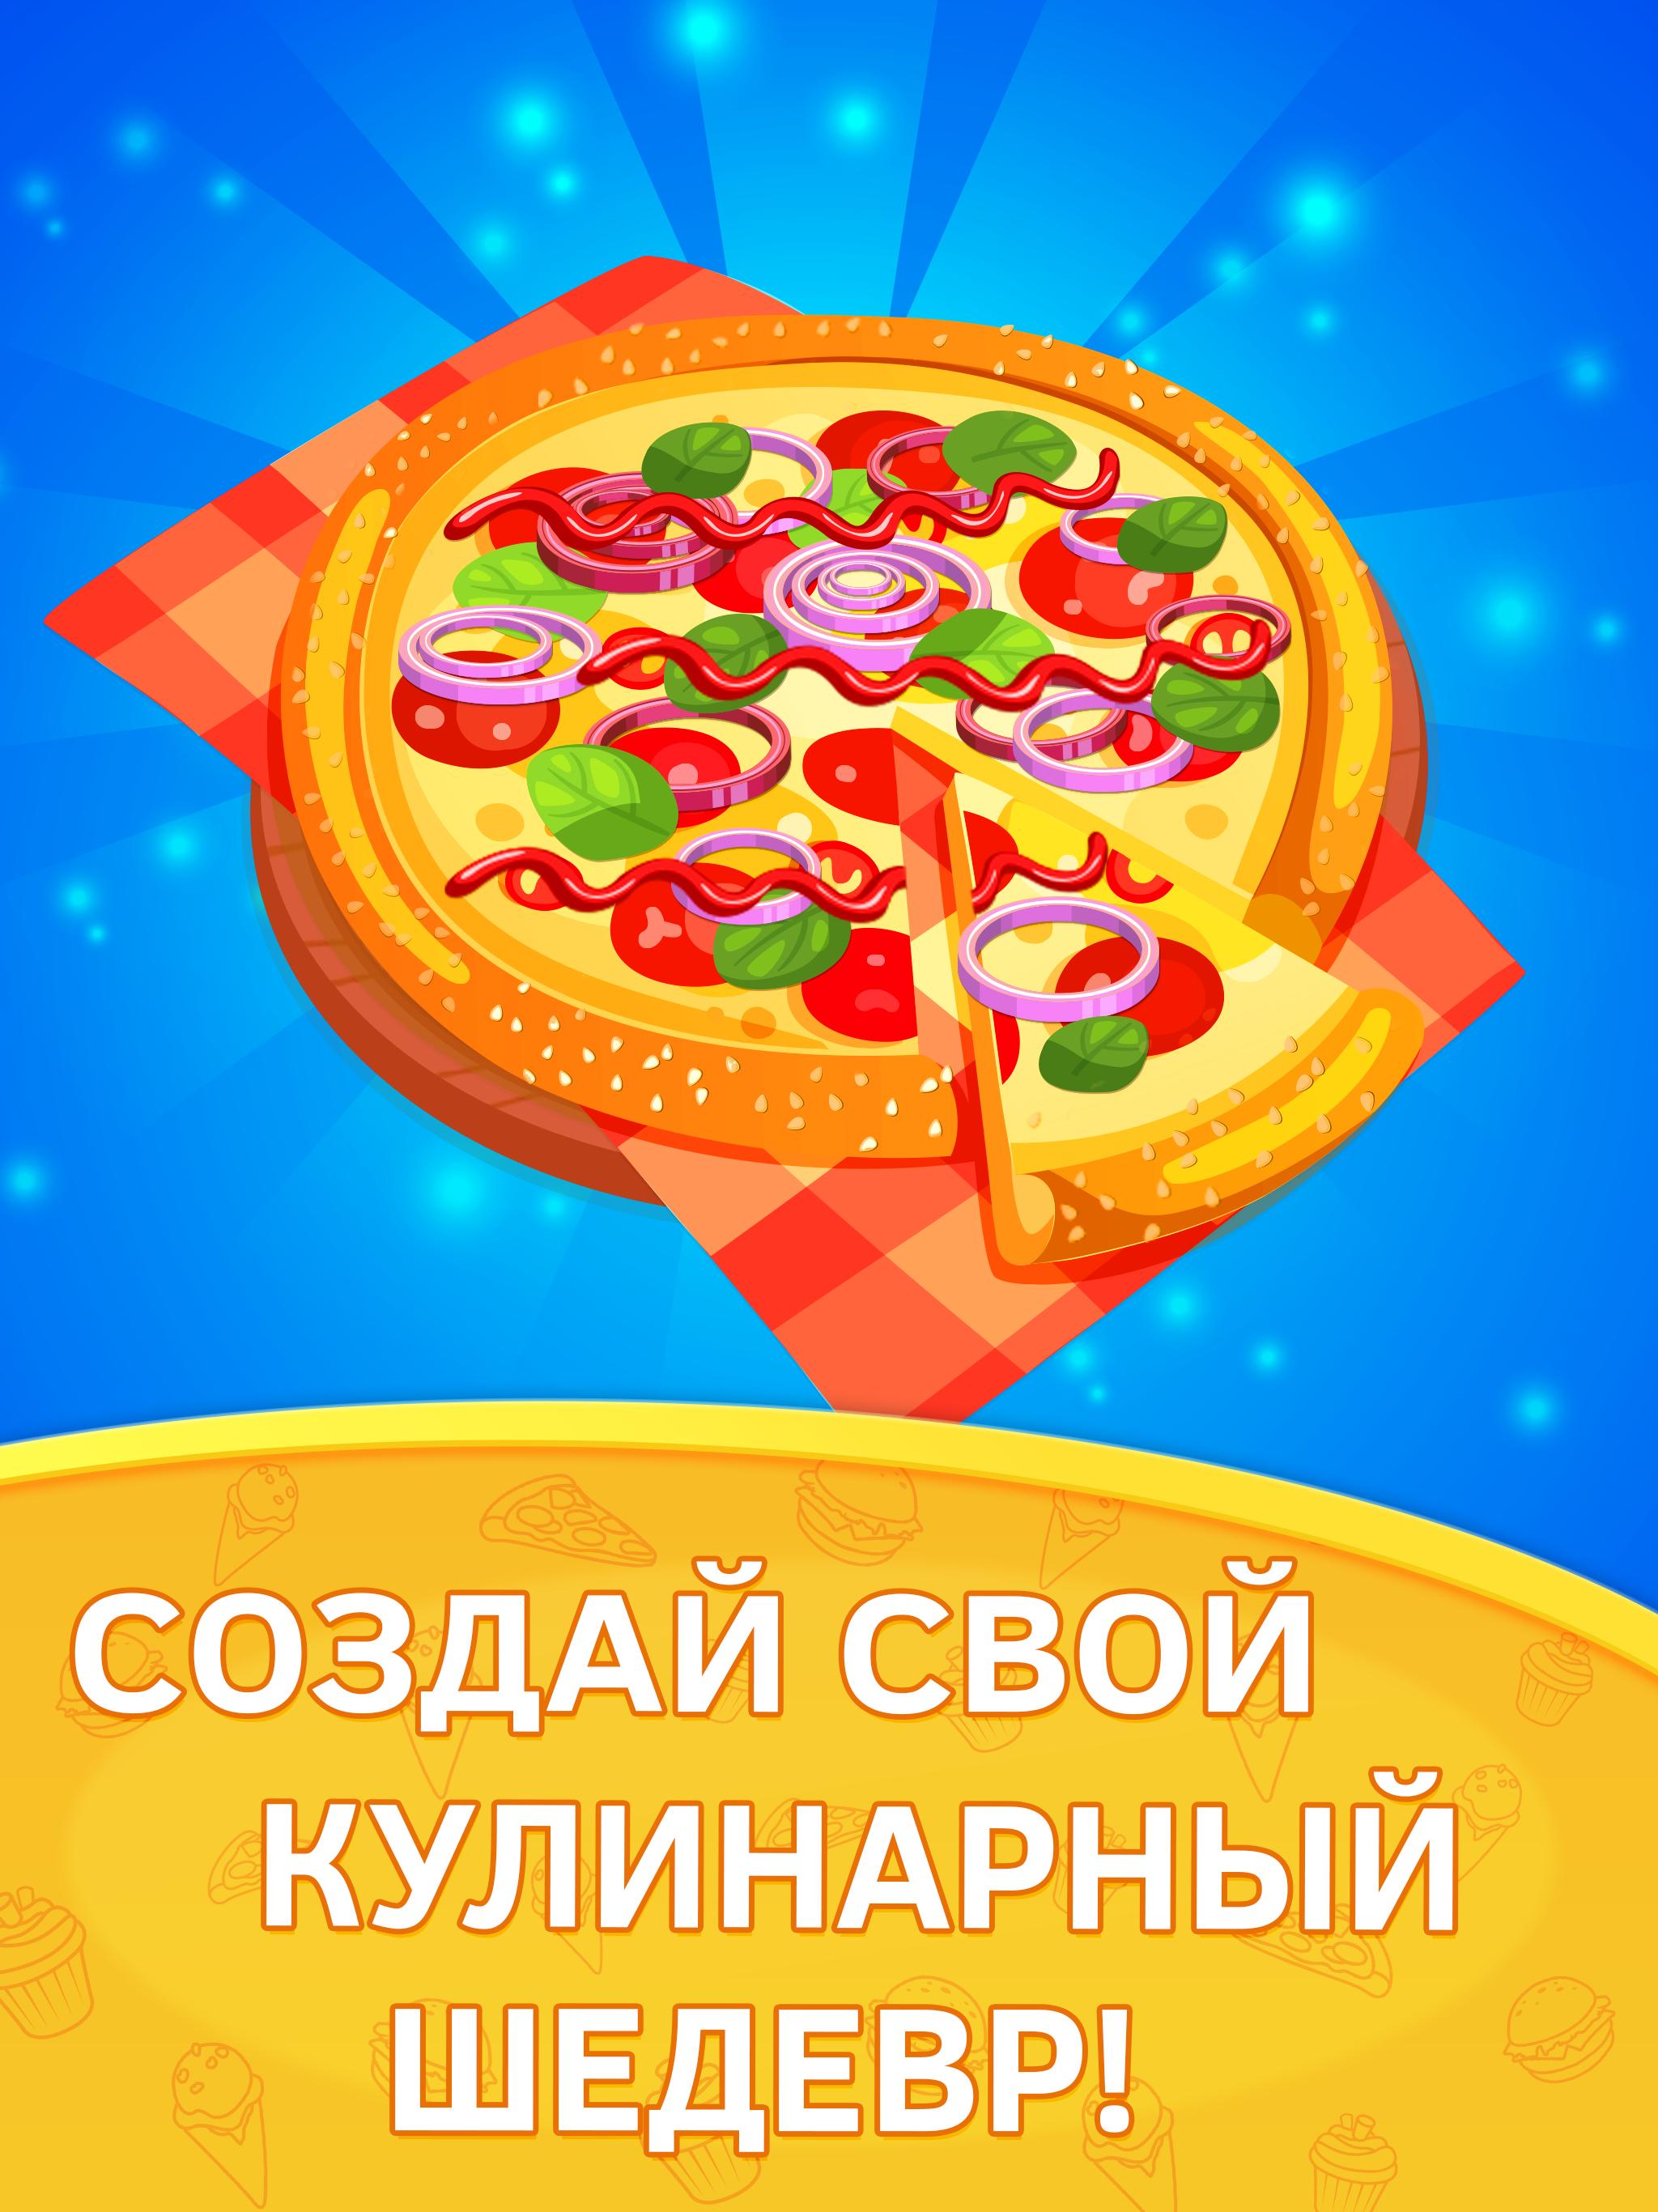 играть онлайн бесплатно готовить пиццу играть онлайн бесплатно фото 87